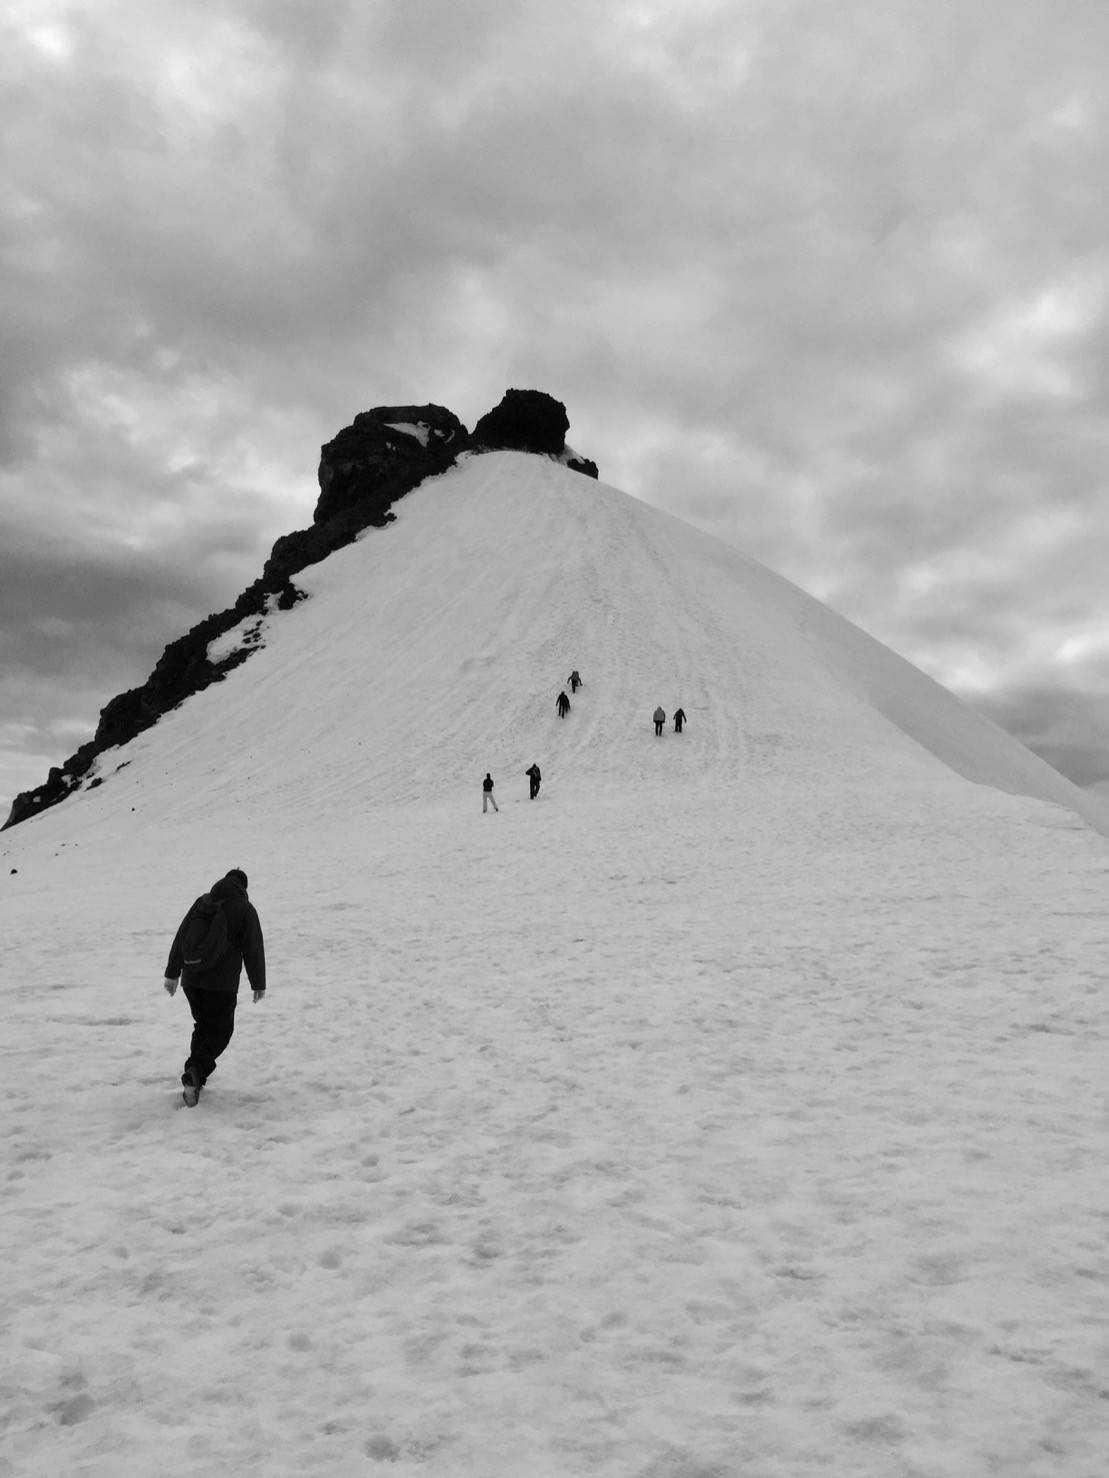 Heading up the Snæfellsjökull peak